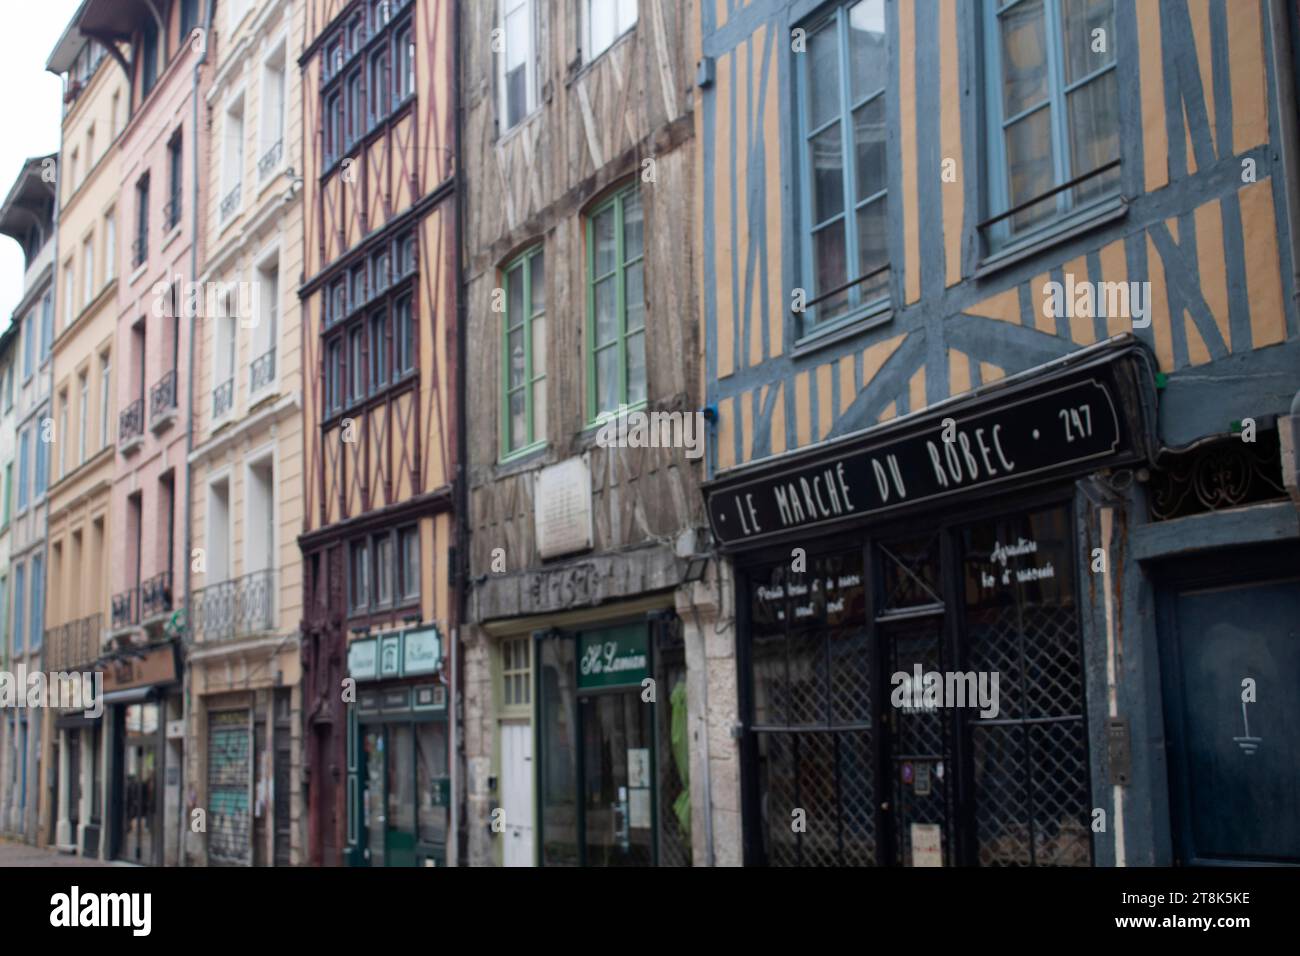 Rues pavées médiévales restaurées et bâtiments à colombages à Rouen Normandie, France Banque D'Images